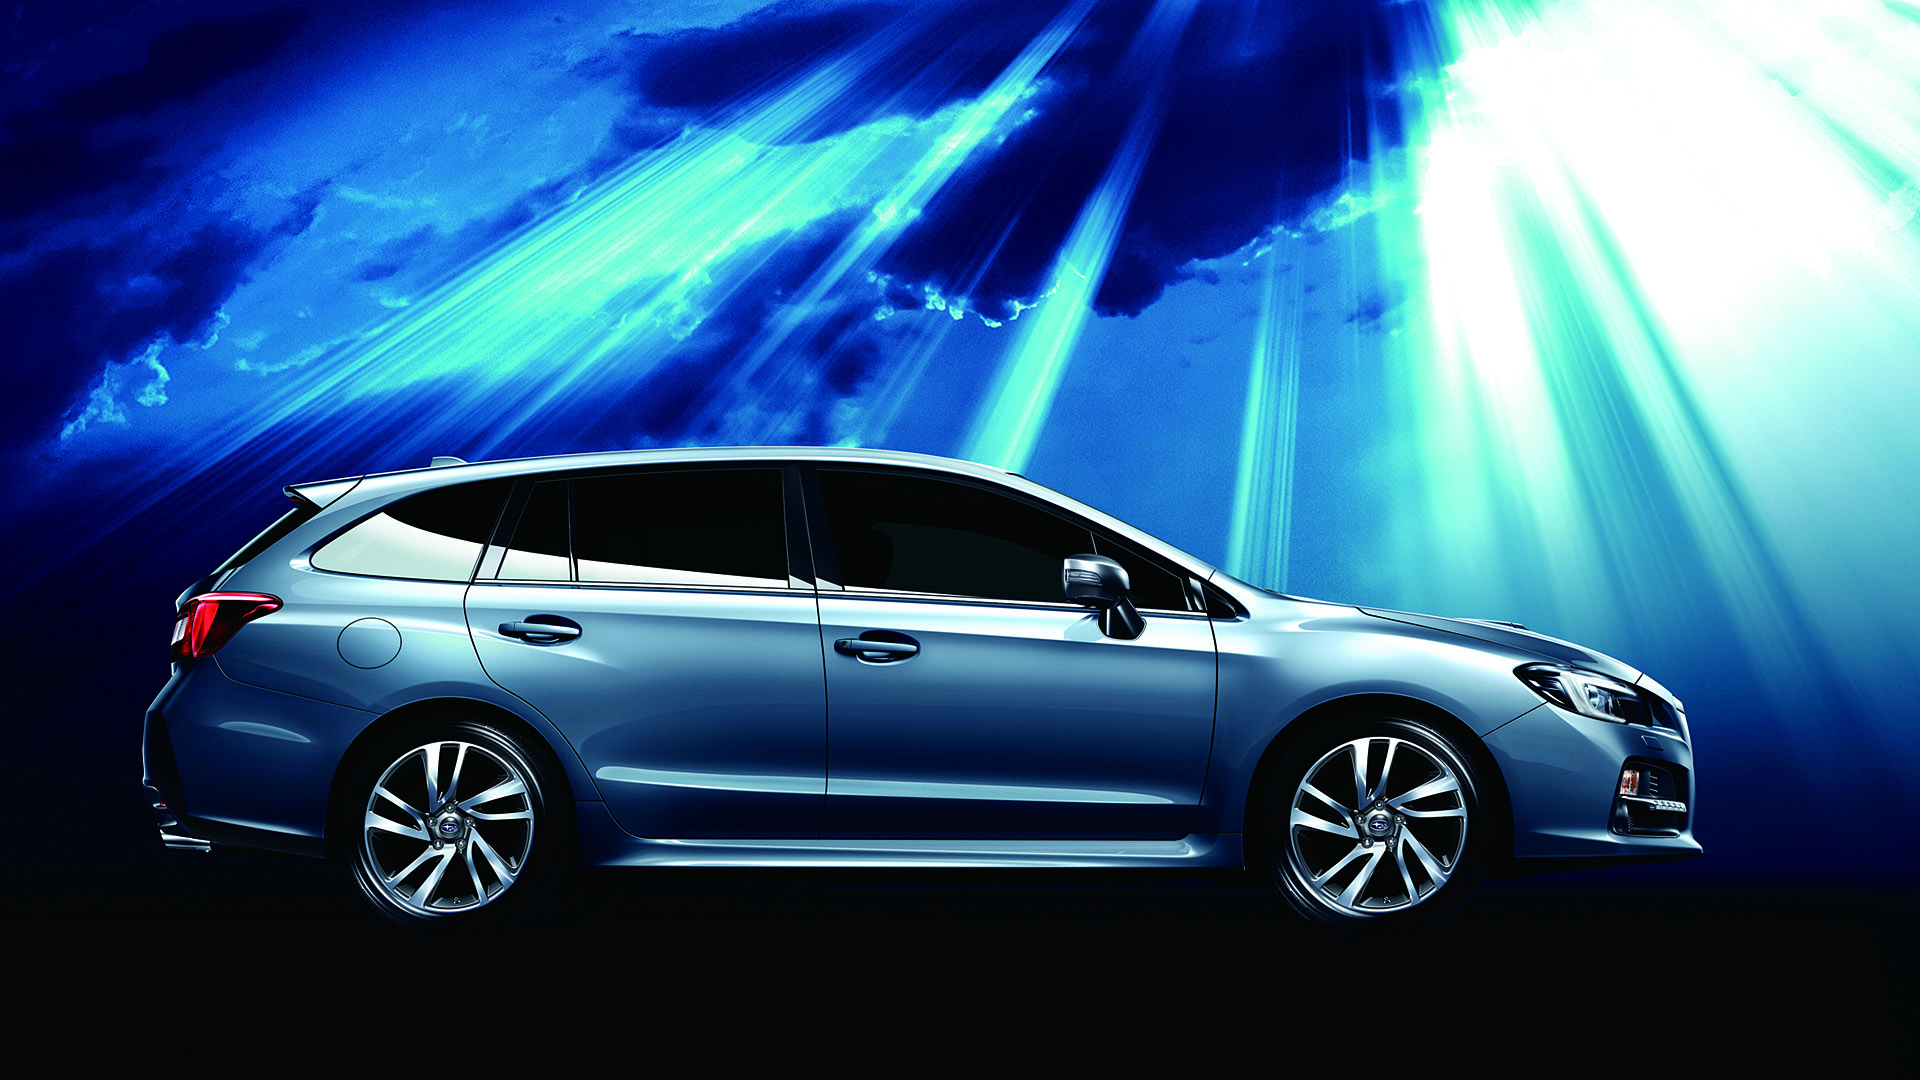  2013 Subaru Levorg Concept Wallpaper.